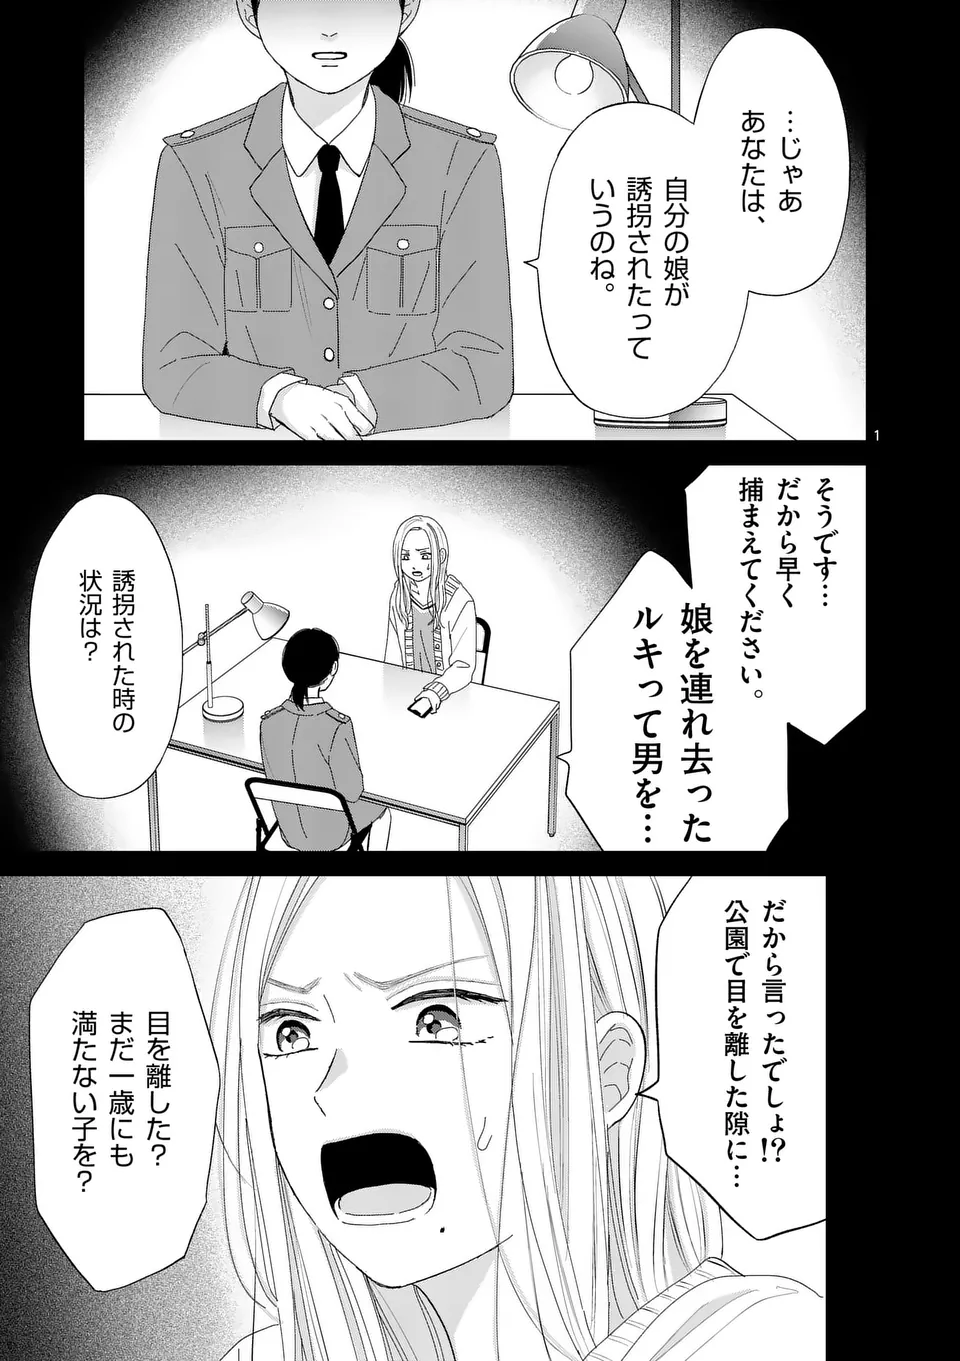 Atashi wo Ijimeta Kanojo no Ko - Chapter 6.1 - Page 1